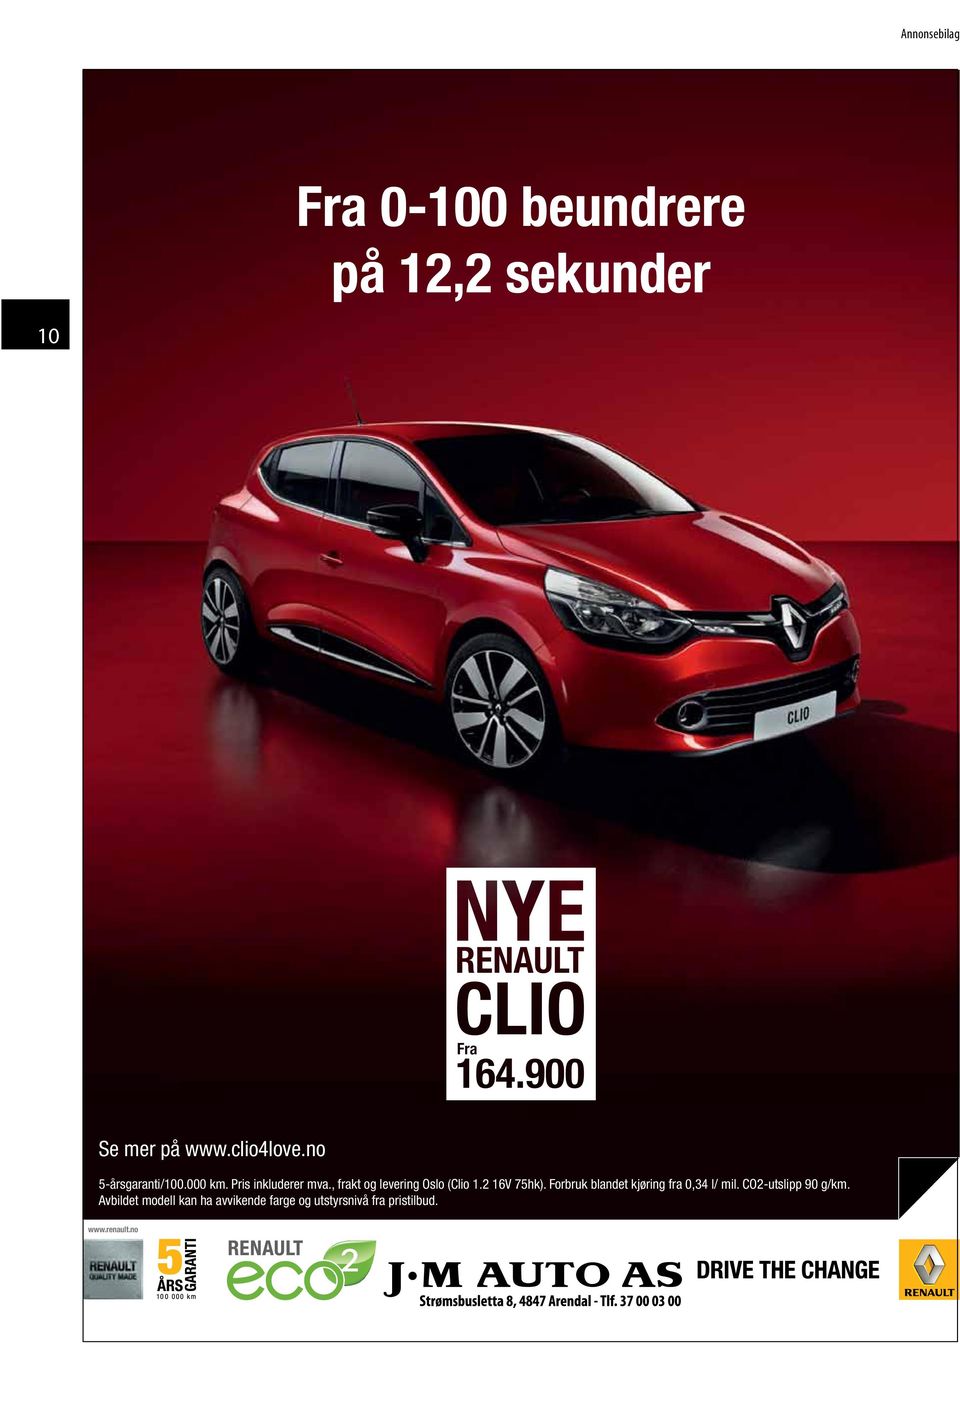 , frakt og levering Oslo (Clio 1.2 16V 75hk).